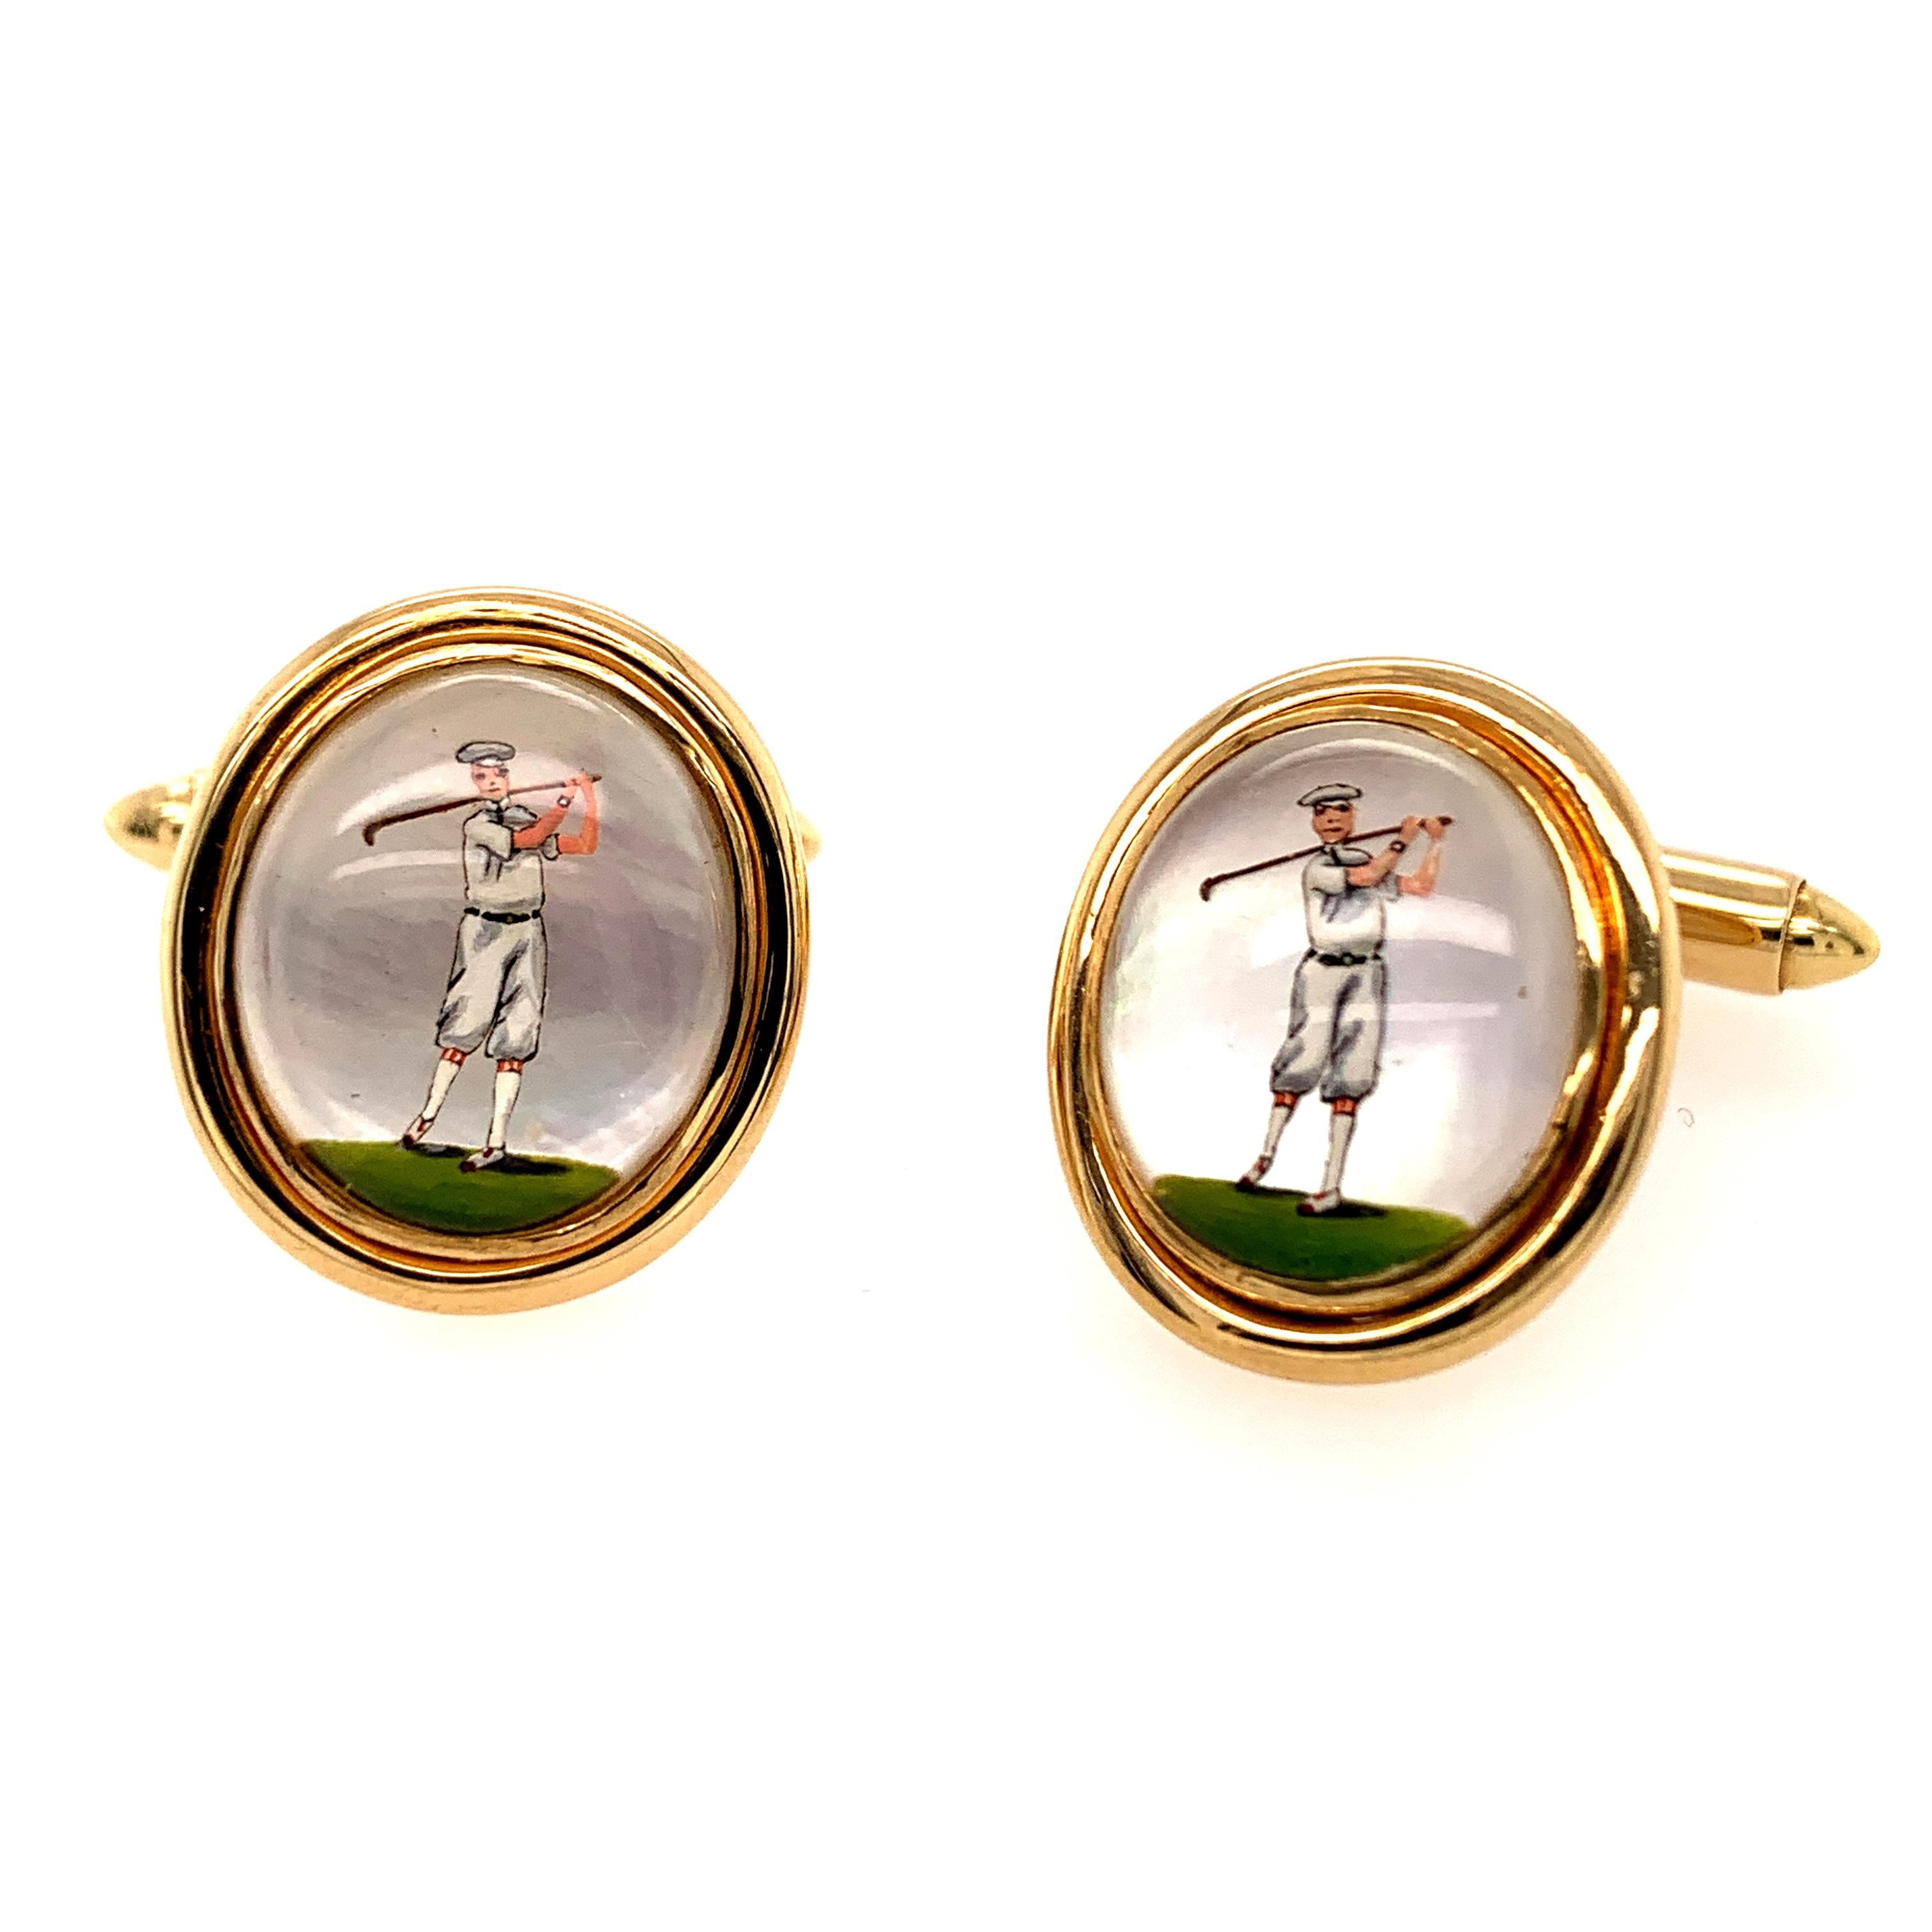 Unverwechselbare Manschettenknöpfe aus rückseitigem Kristall, die einen Golfer in Vintage-Kleidung darstellen, der einen Golfschläger schwingt.  Fassung aus 18 Karat Gelbgold.  3/4